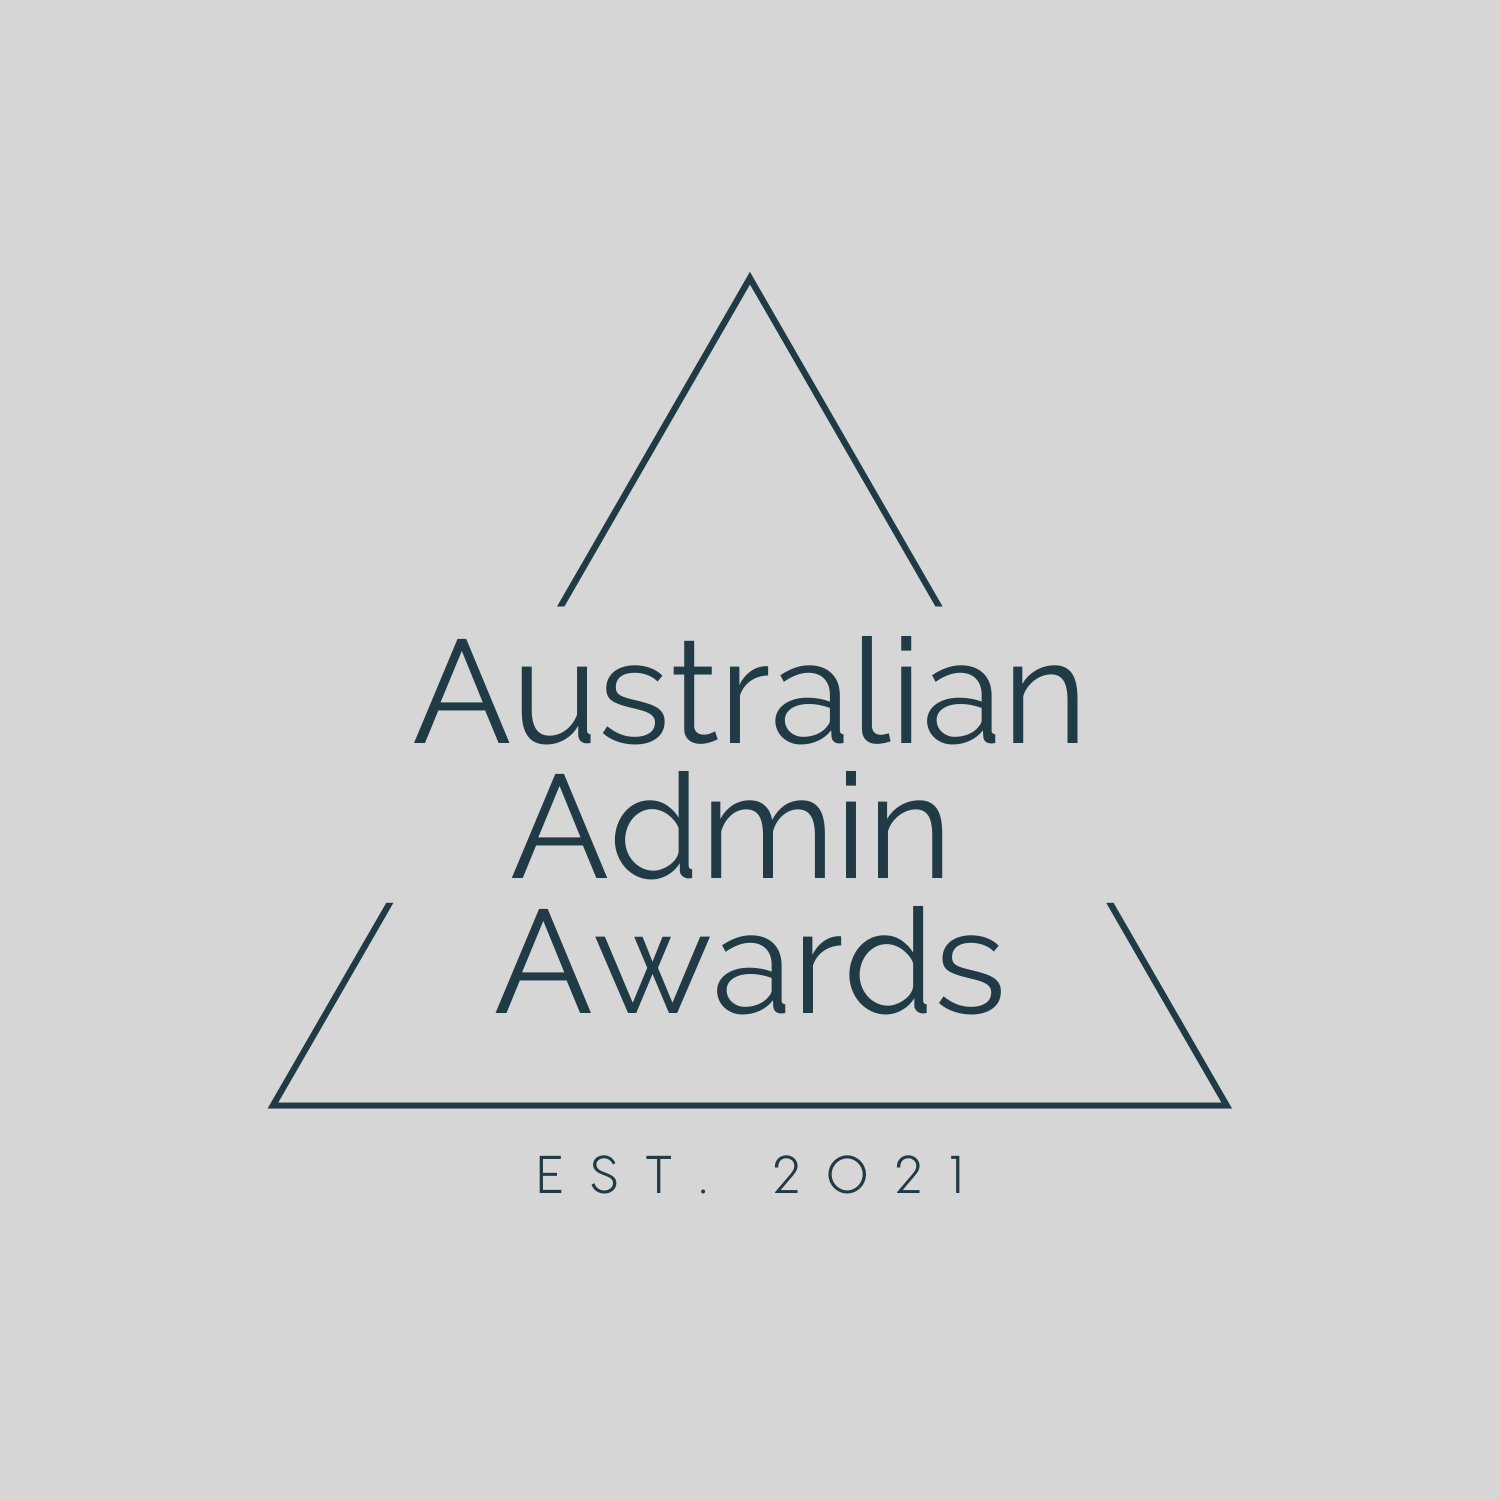 Sponsorship of Australian Admin Awards